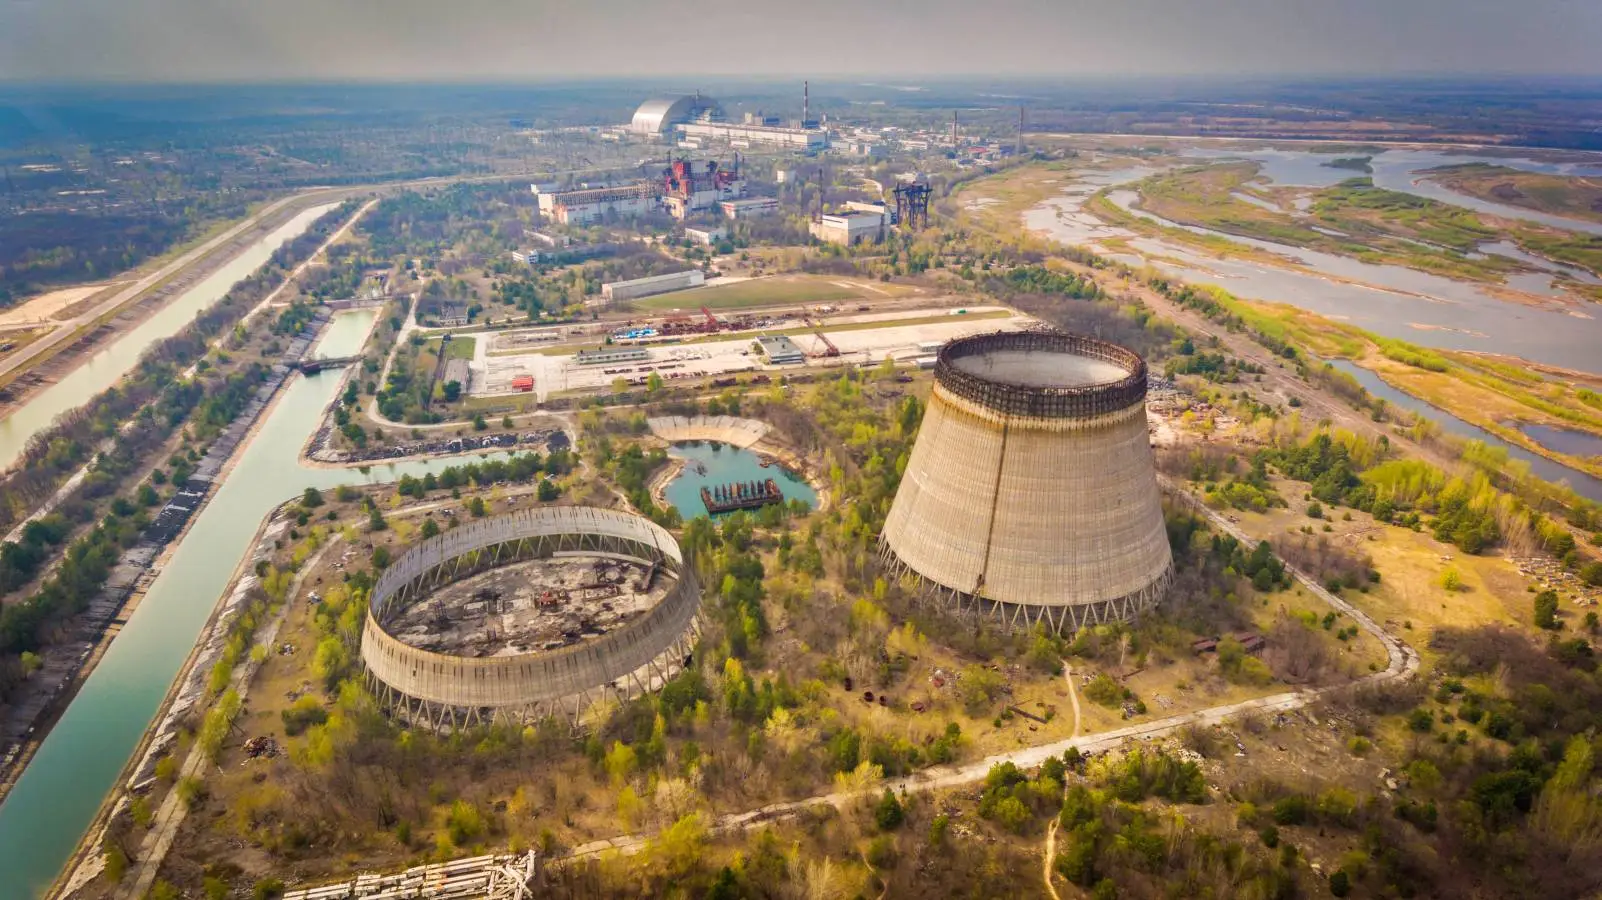 Alarmsignal für die Kernkraftwerkszentrale von Saporoschje, ausgelöst durch die Europäische Kommission